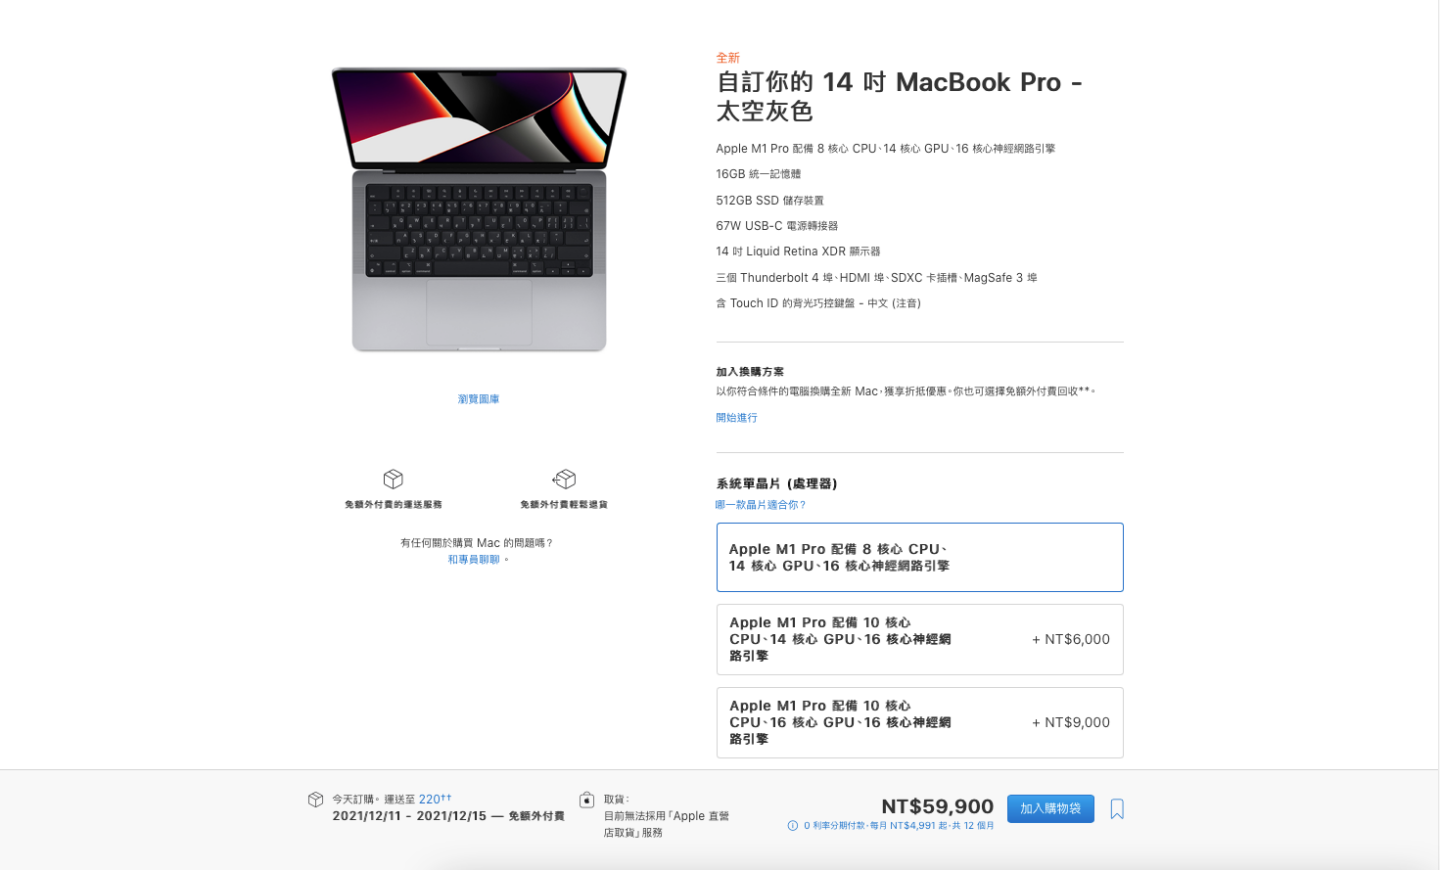 新款 MacBook Pro 開賣了！售價新臺幣 59,900 起，現在下訂最快 12/11 就能收到